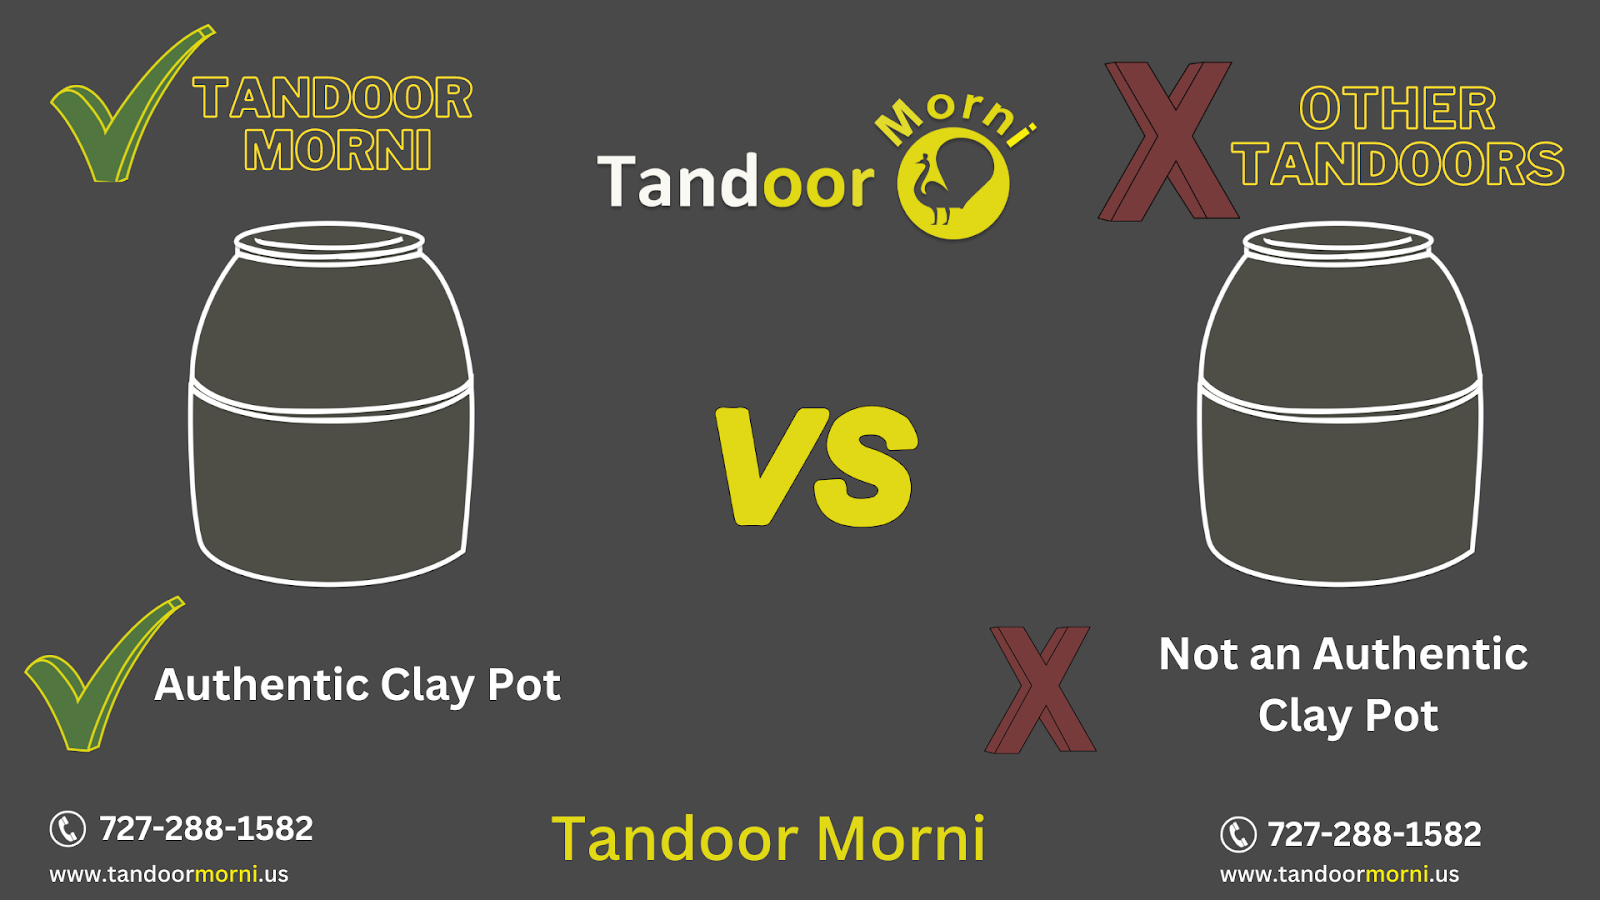 Tandoor from Morni Tandoor features an original clay pot, whereas other tandoors do not.